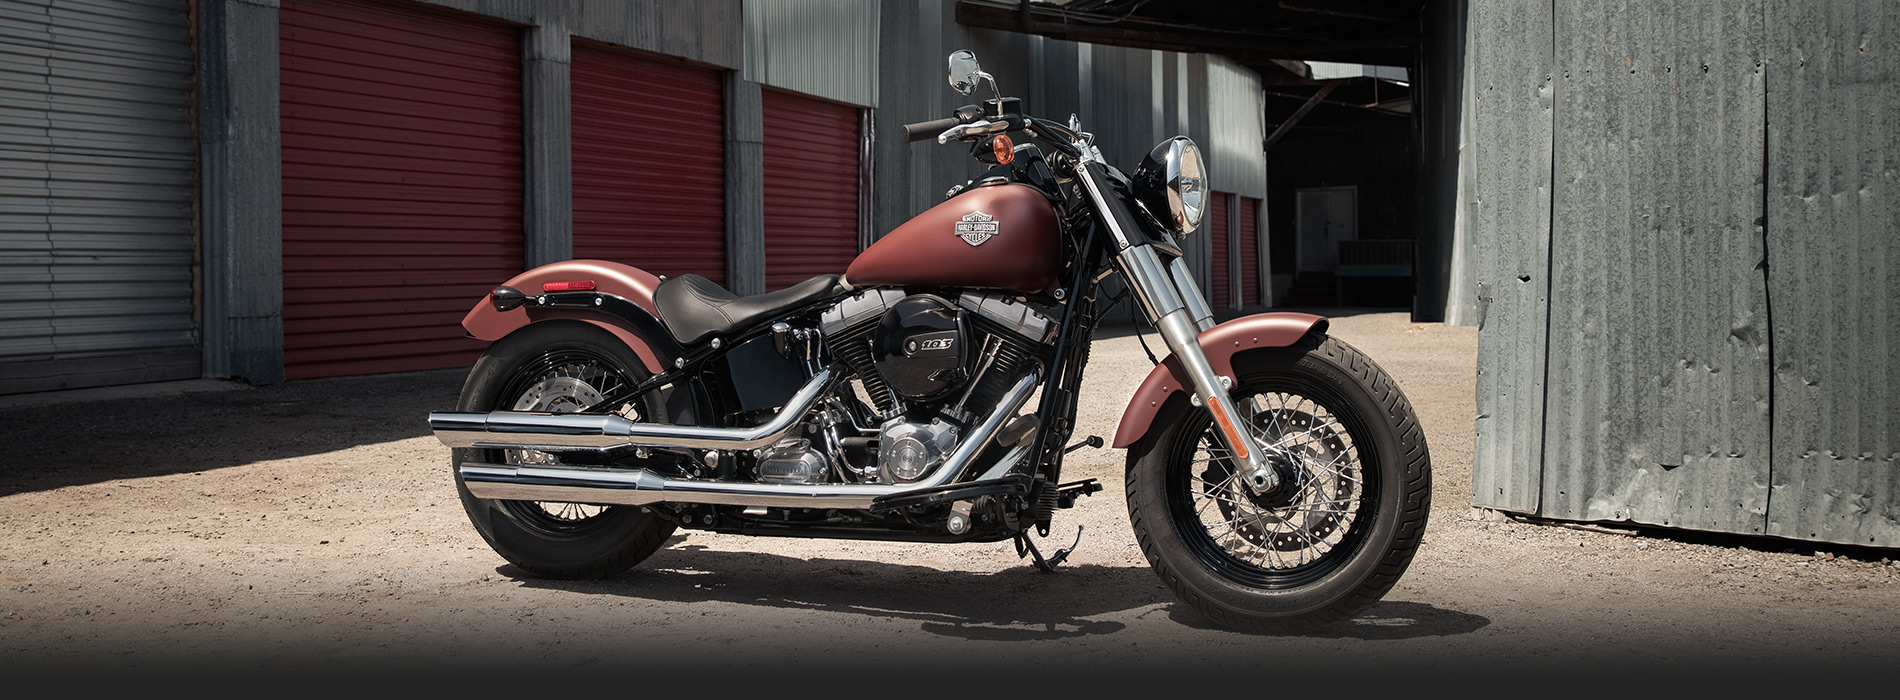 Harley-Davidson Softail Slim #12